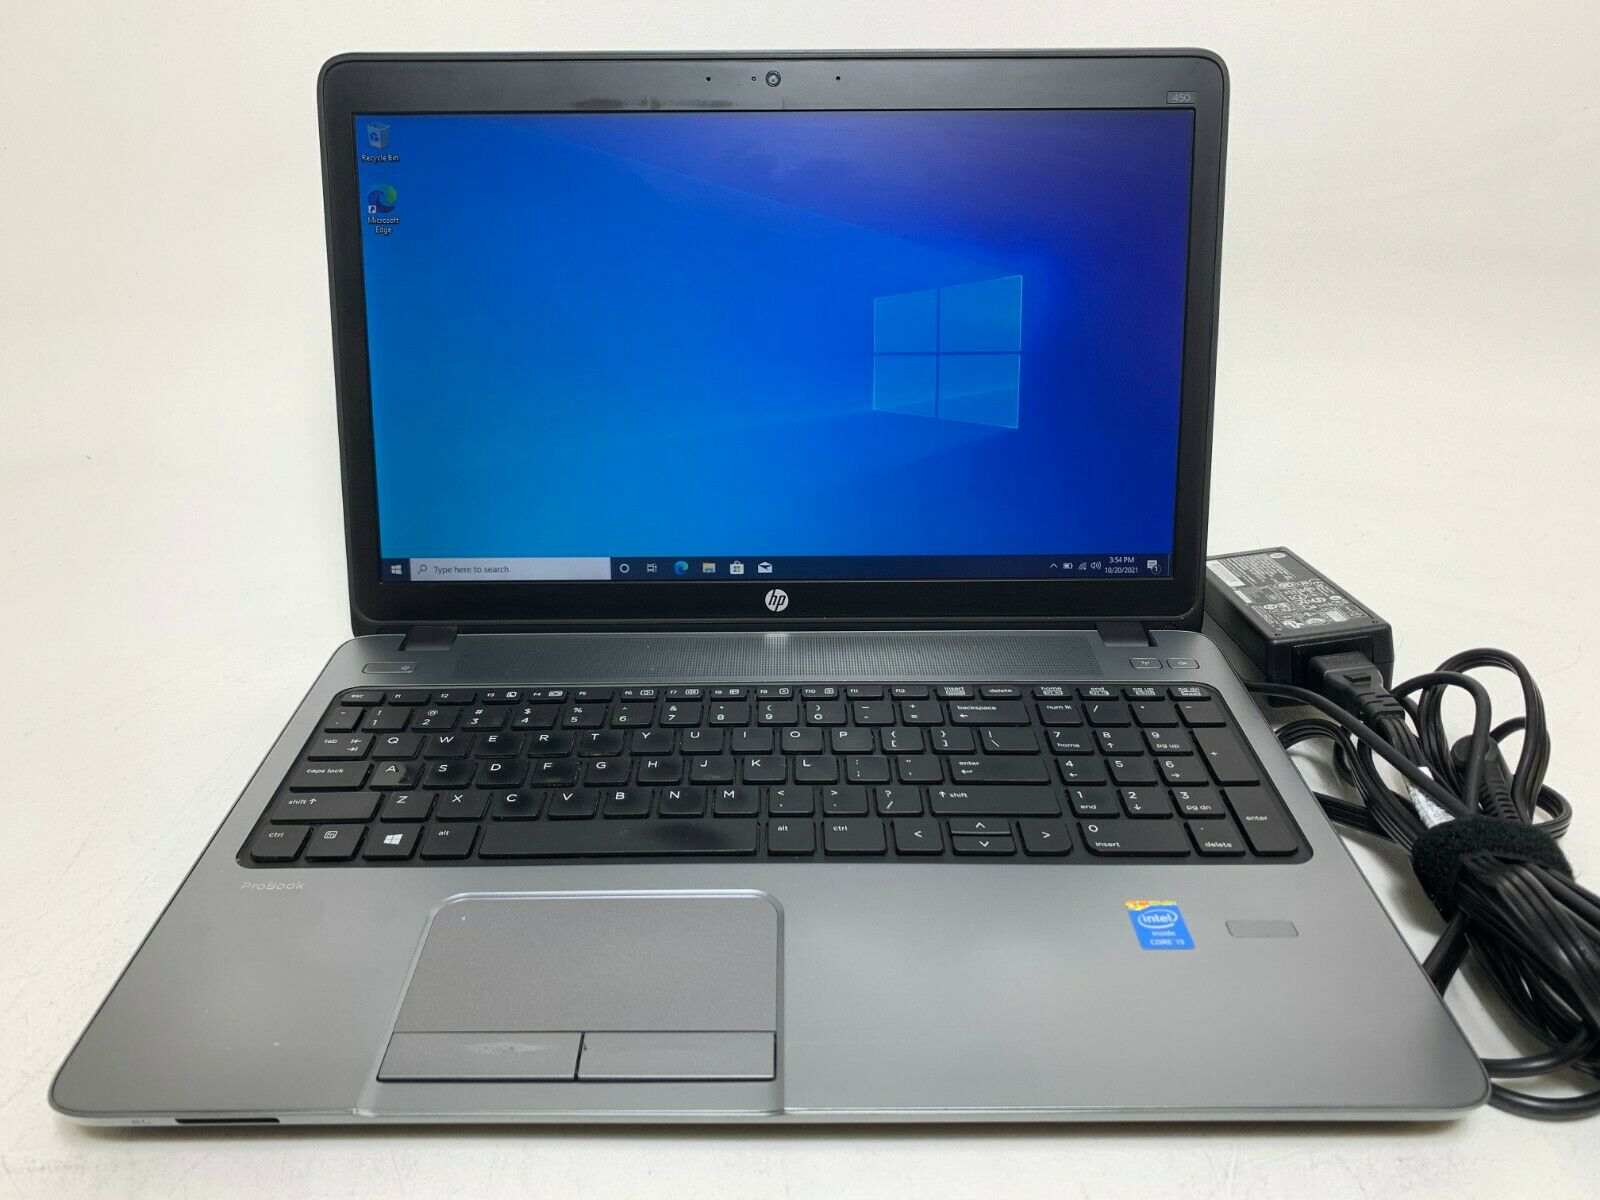 【定番の15.6インチ】 【スタイリッシュノート】 HP ProBook 450 G1 Notebook PC 第4世代 Core i3 4000M 16GB 新品SSD480GB DVD-ROM Windows10 64bit WPSOffice 15.6インチ 無線LAN パソコン ノートパソコン PC Notebook新品SSD480GB